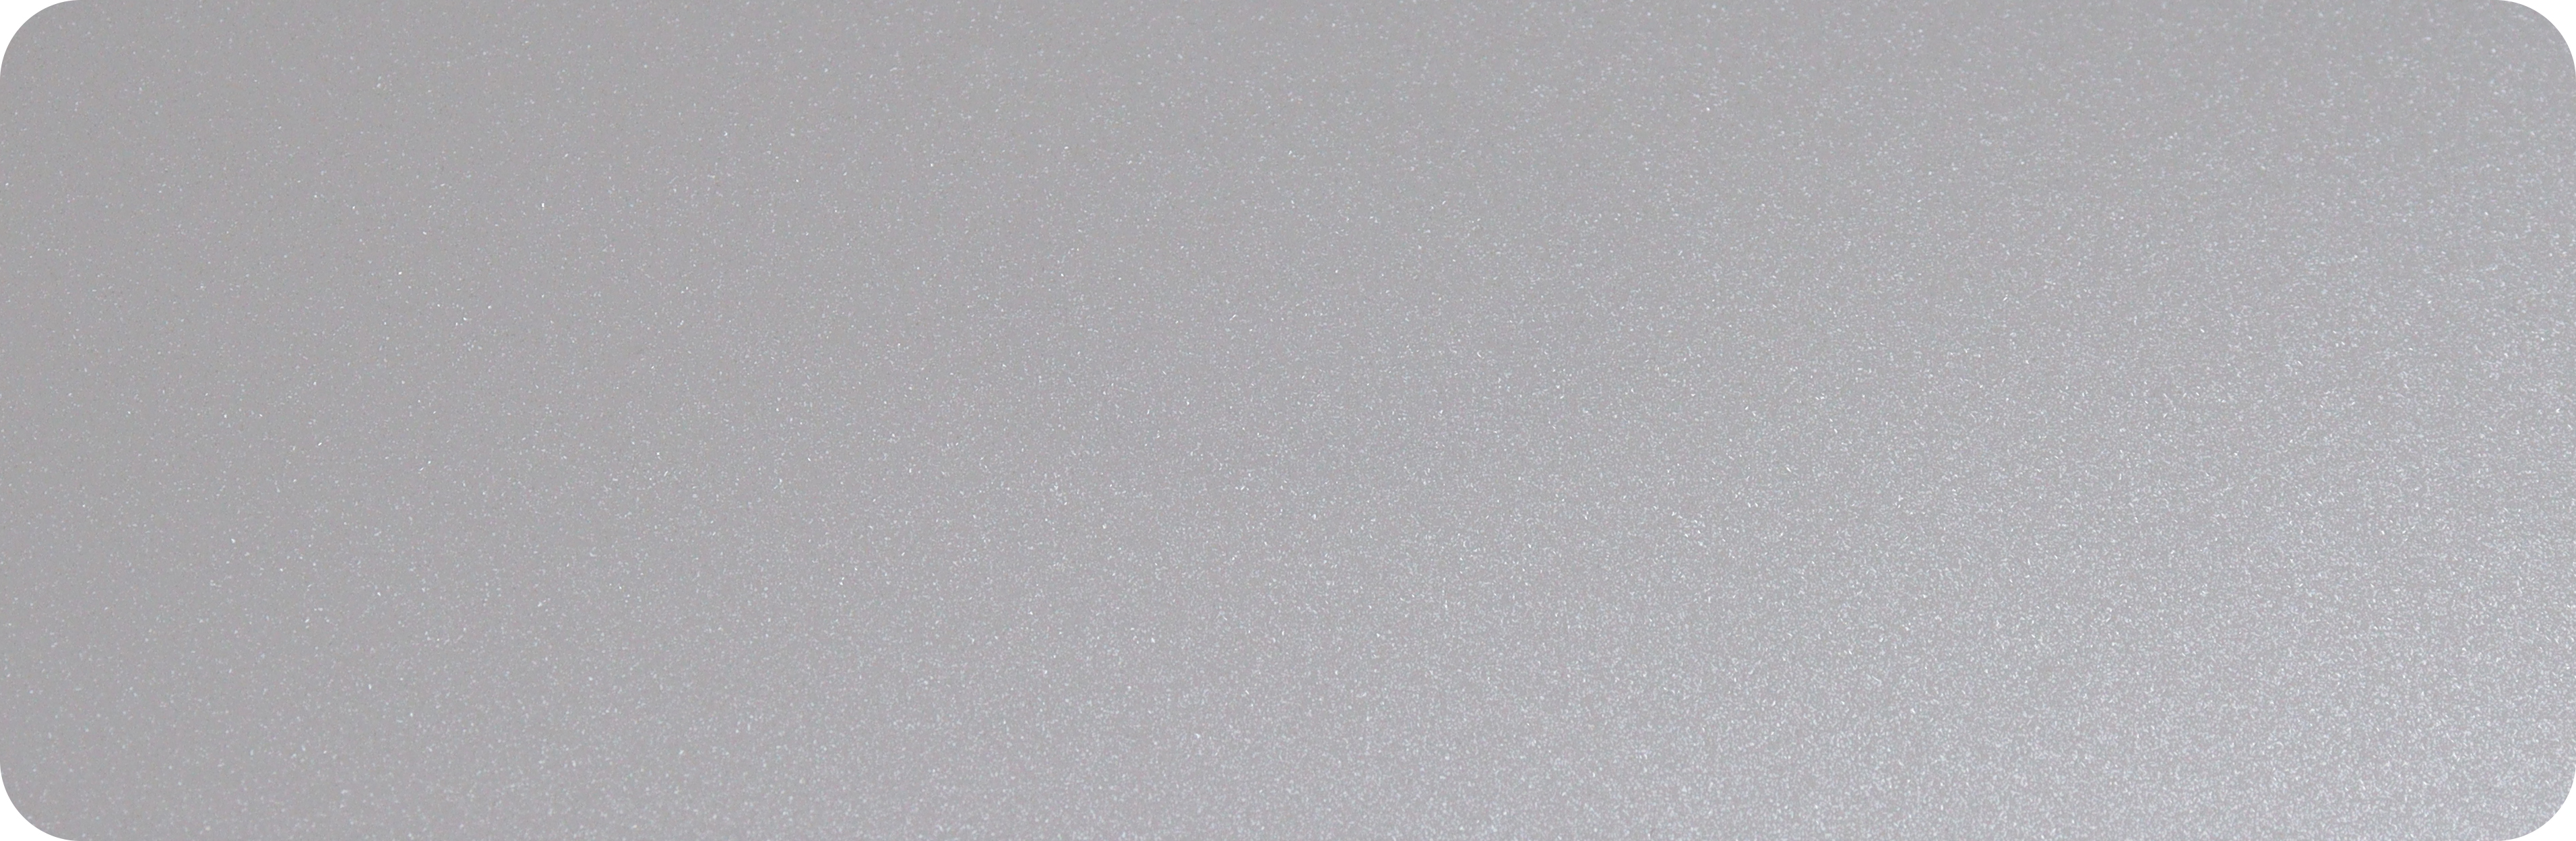 1.TPU钻石白-TPU-diamond white